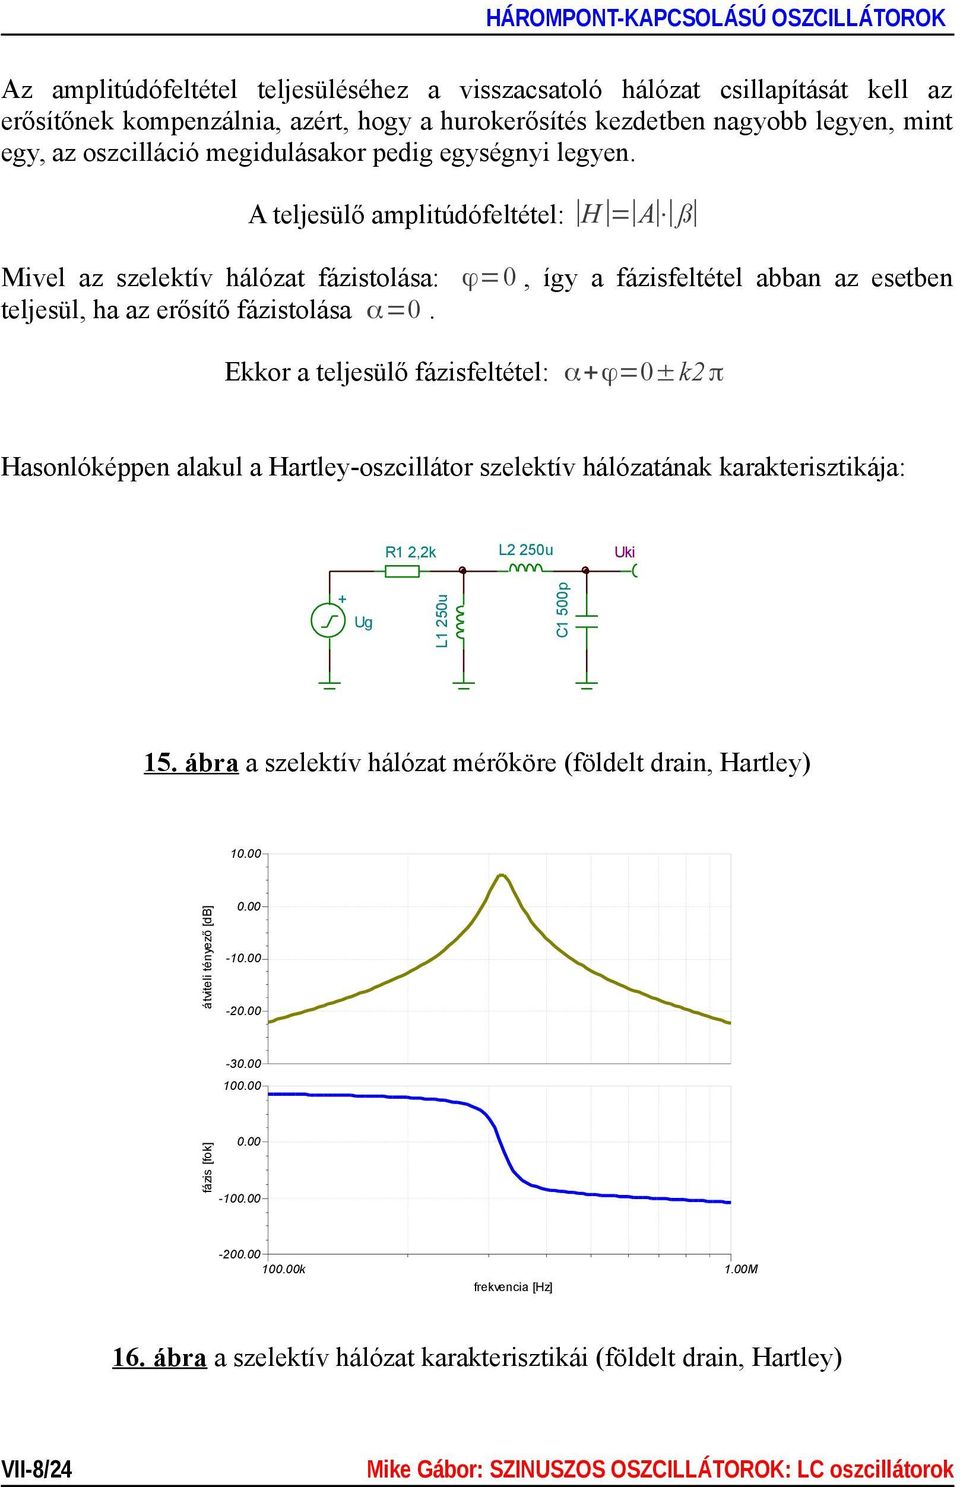 Ekkor a teljesülő fázisfeltétel: α+ϕ=0±k2 π Hasonlóképpen alakul a Hartley-oszcillátor szelektív hálózatának karakterisztikája: R1 2,2k L2 250u Uki + Ug L1 250u C1 500p 15.